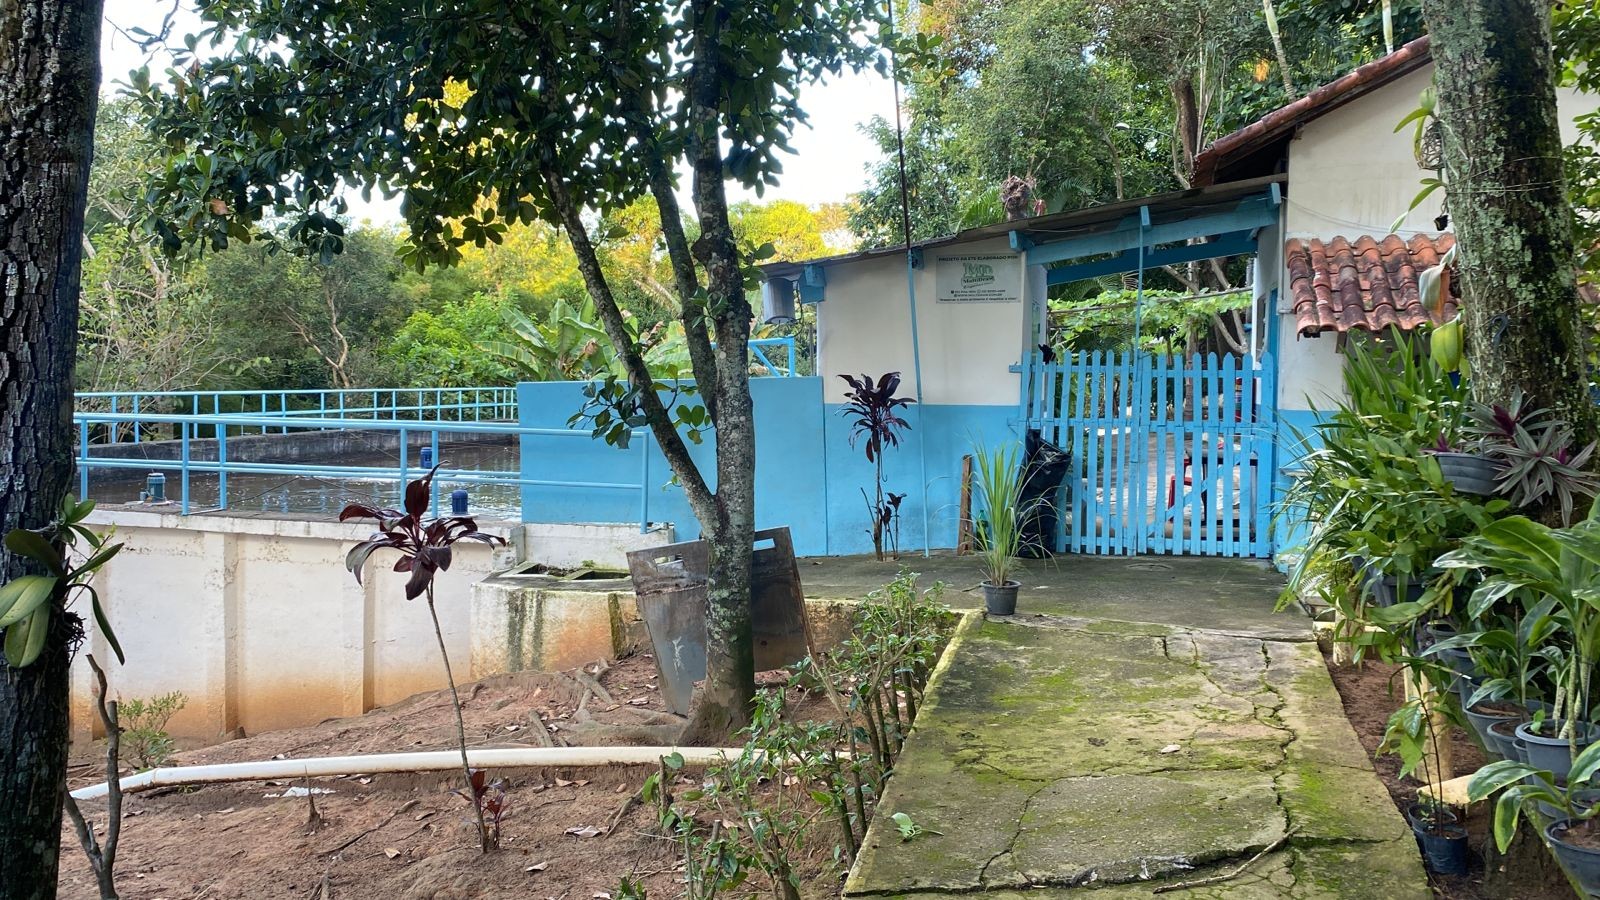 Feto é encontrado em estação de tratamento de esgoto na comunidade católica Canção Nova, em Cachoeira Paulista